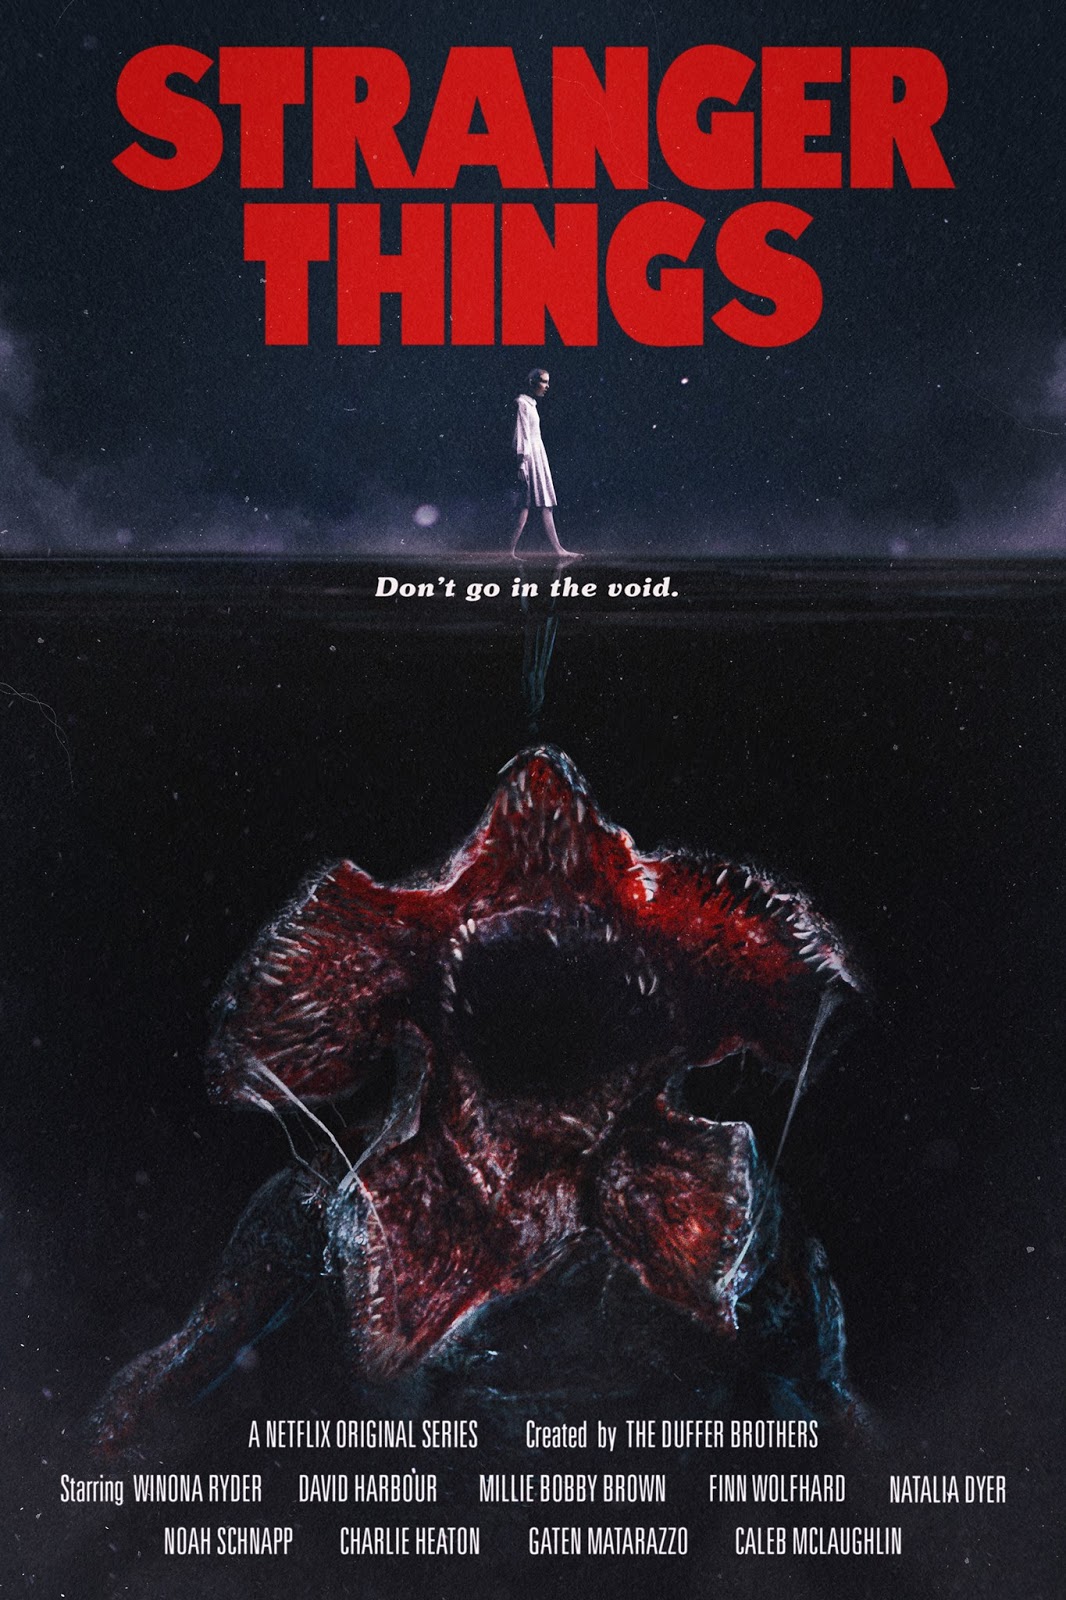 STRANGER THINGS (Season 2) 80’s-inspired Posters